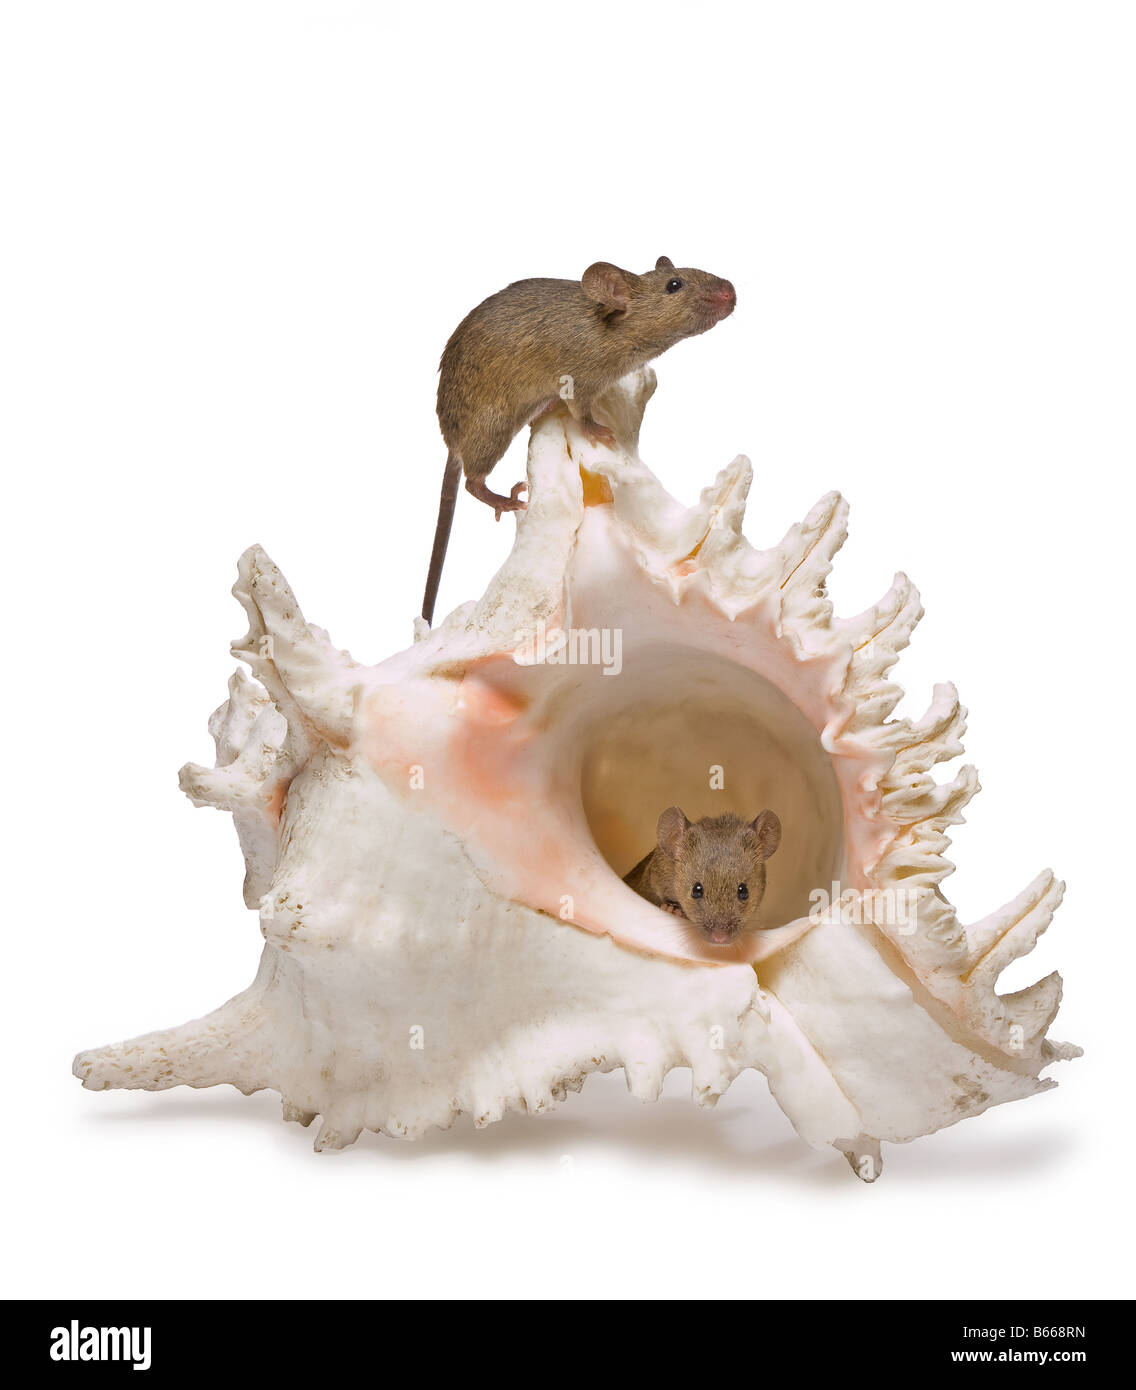 Deux petites souris qui se cachent dans un grand coquillage Banque D'Images